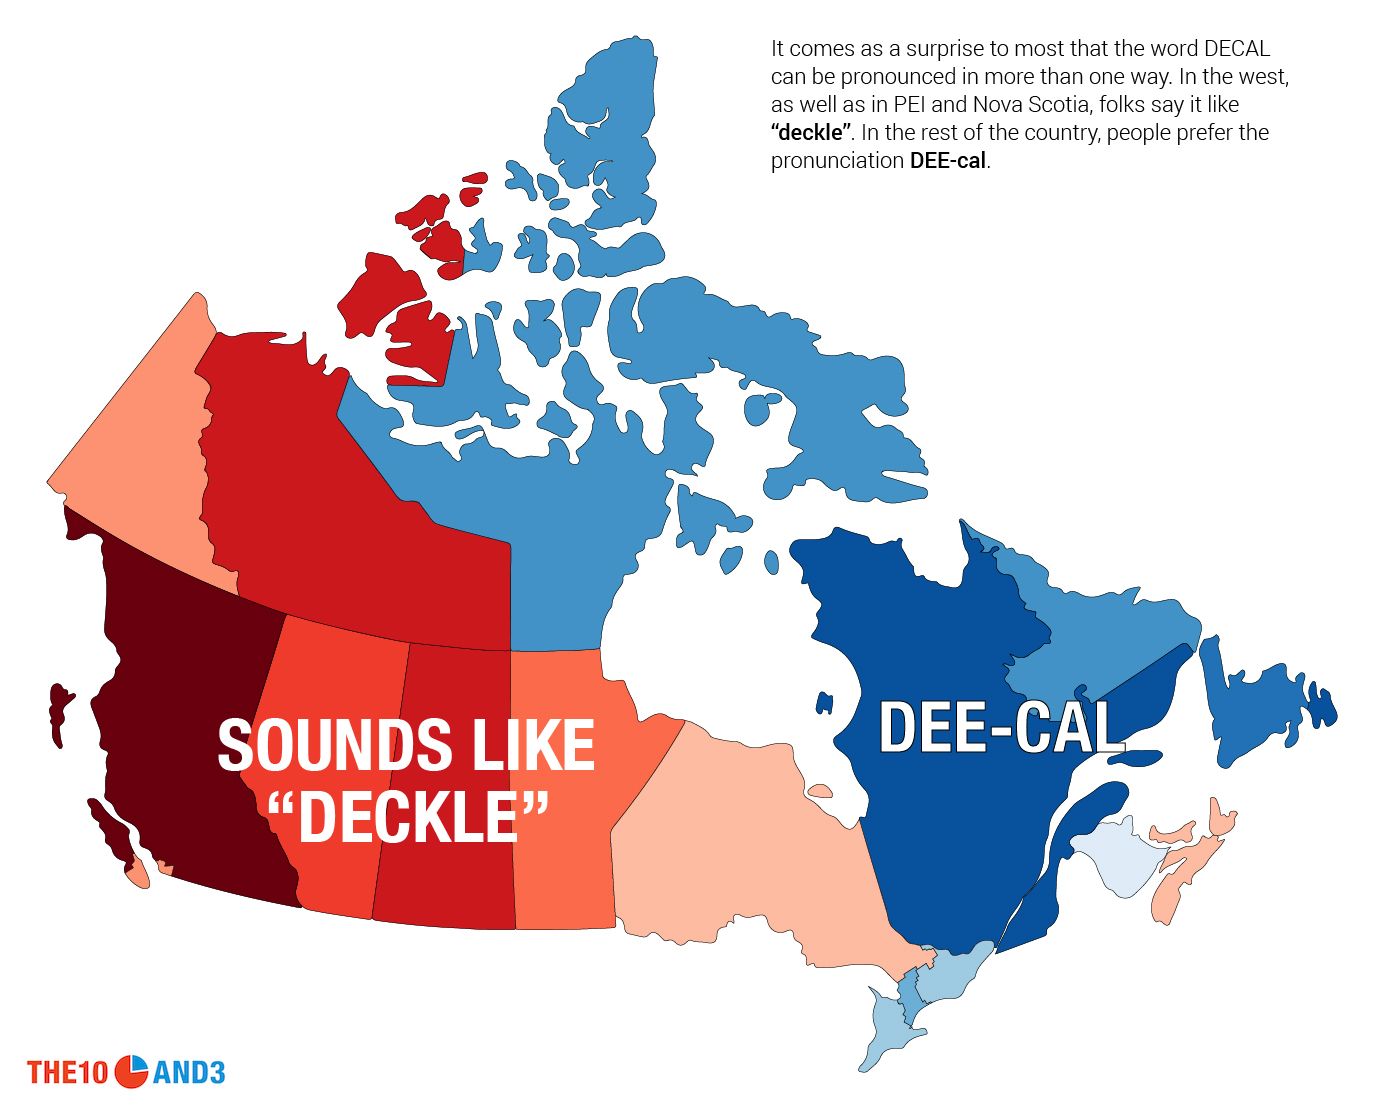 Deckle vs. Dee-cal